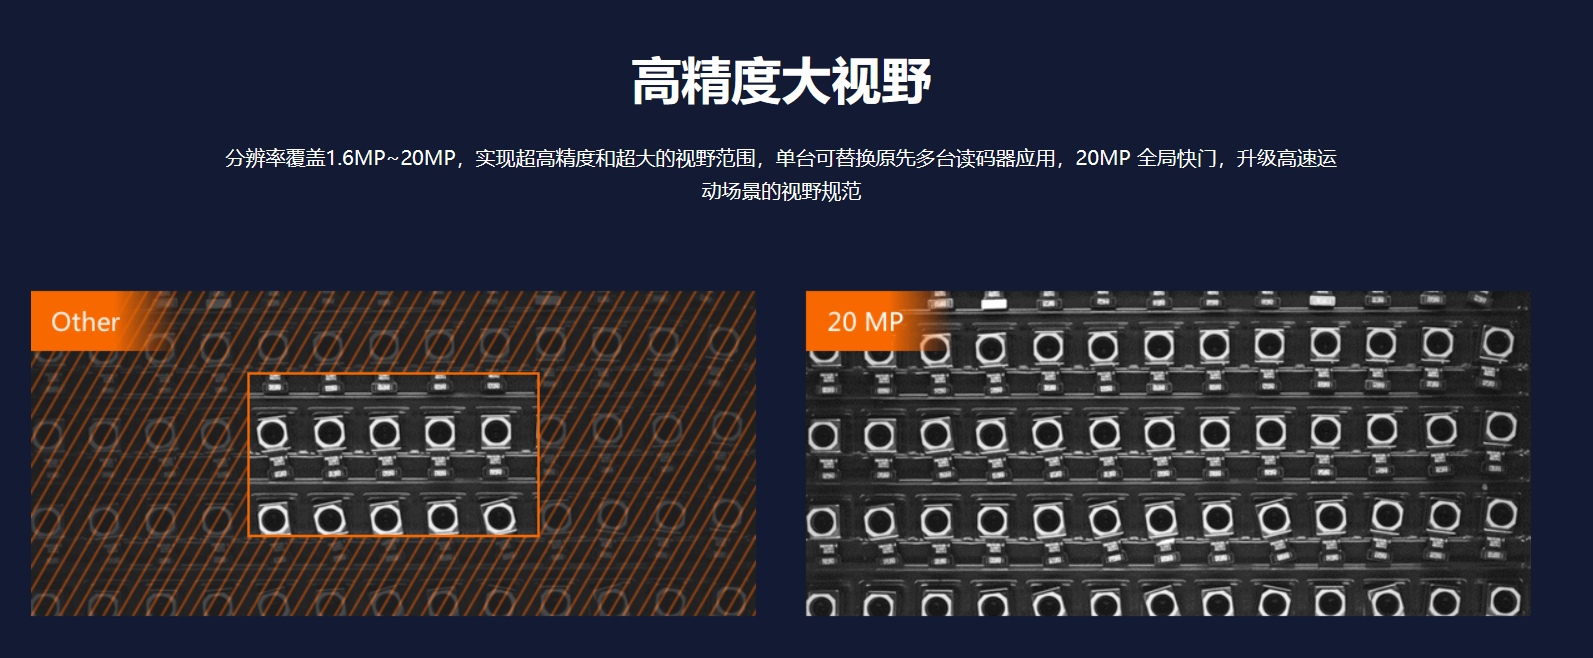 智能读码丨海康ID5000系列 MV-ID5200M-00C-NNN 2000万像素全功能型工业读码器-捷利得(北京)自动化科技有限公司